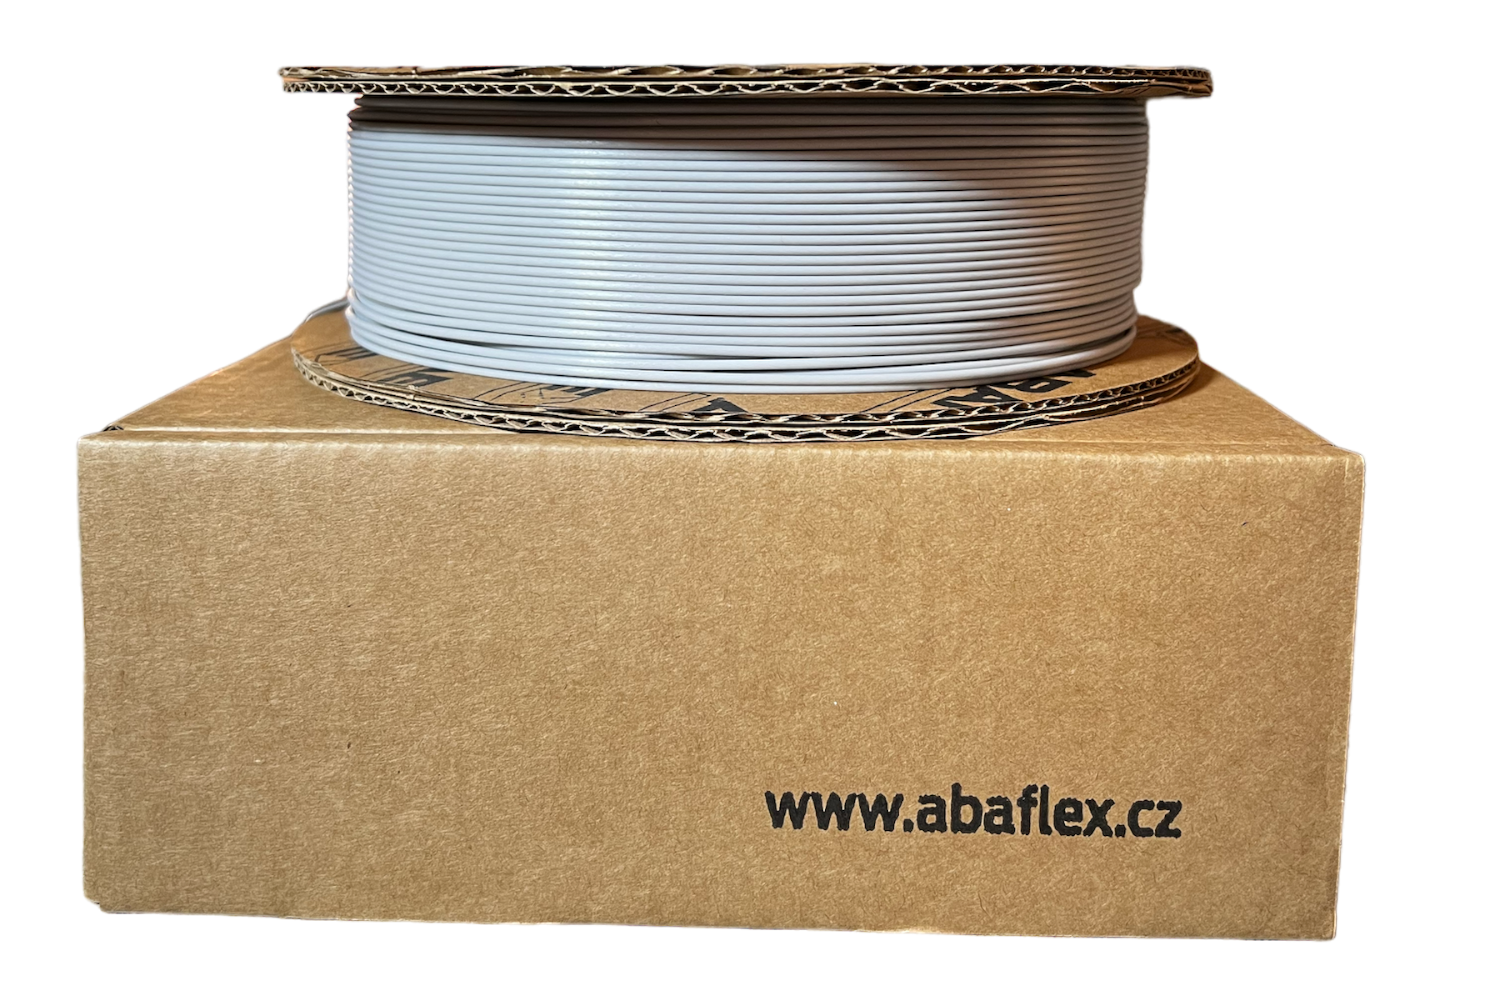 PLA filament ABAFLEX šedý, 1.75 ± 0.019 mm, 750g, cívka 64mm